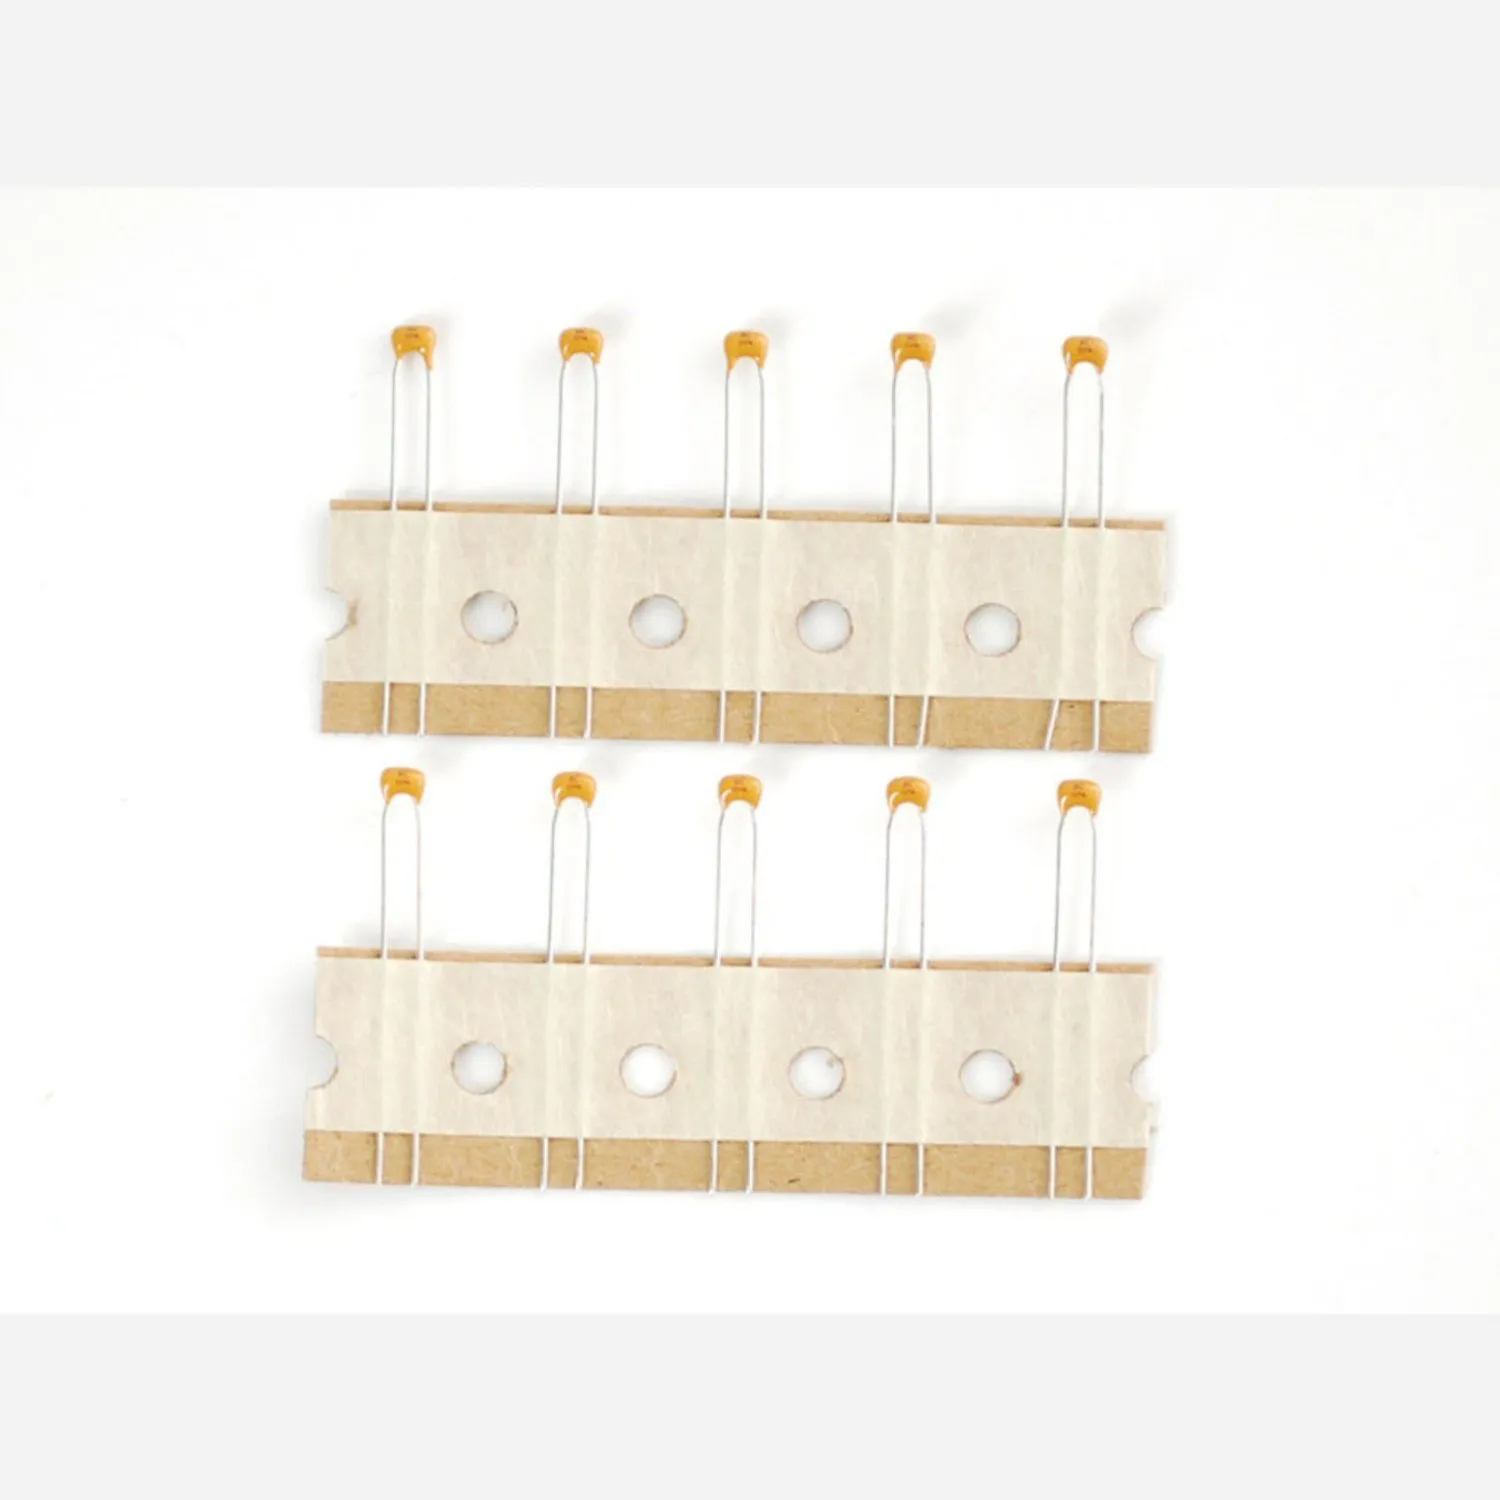 Photo of 0.1uF ceramic capacitors - 10 pack